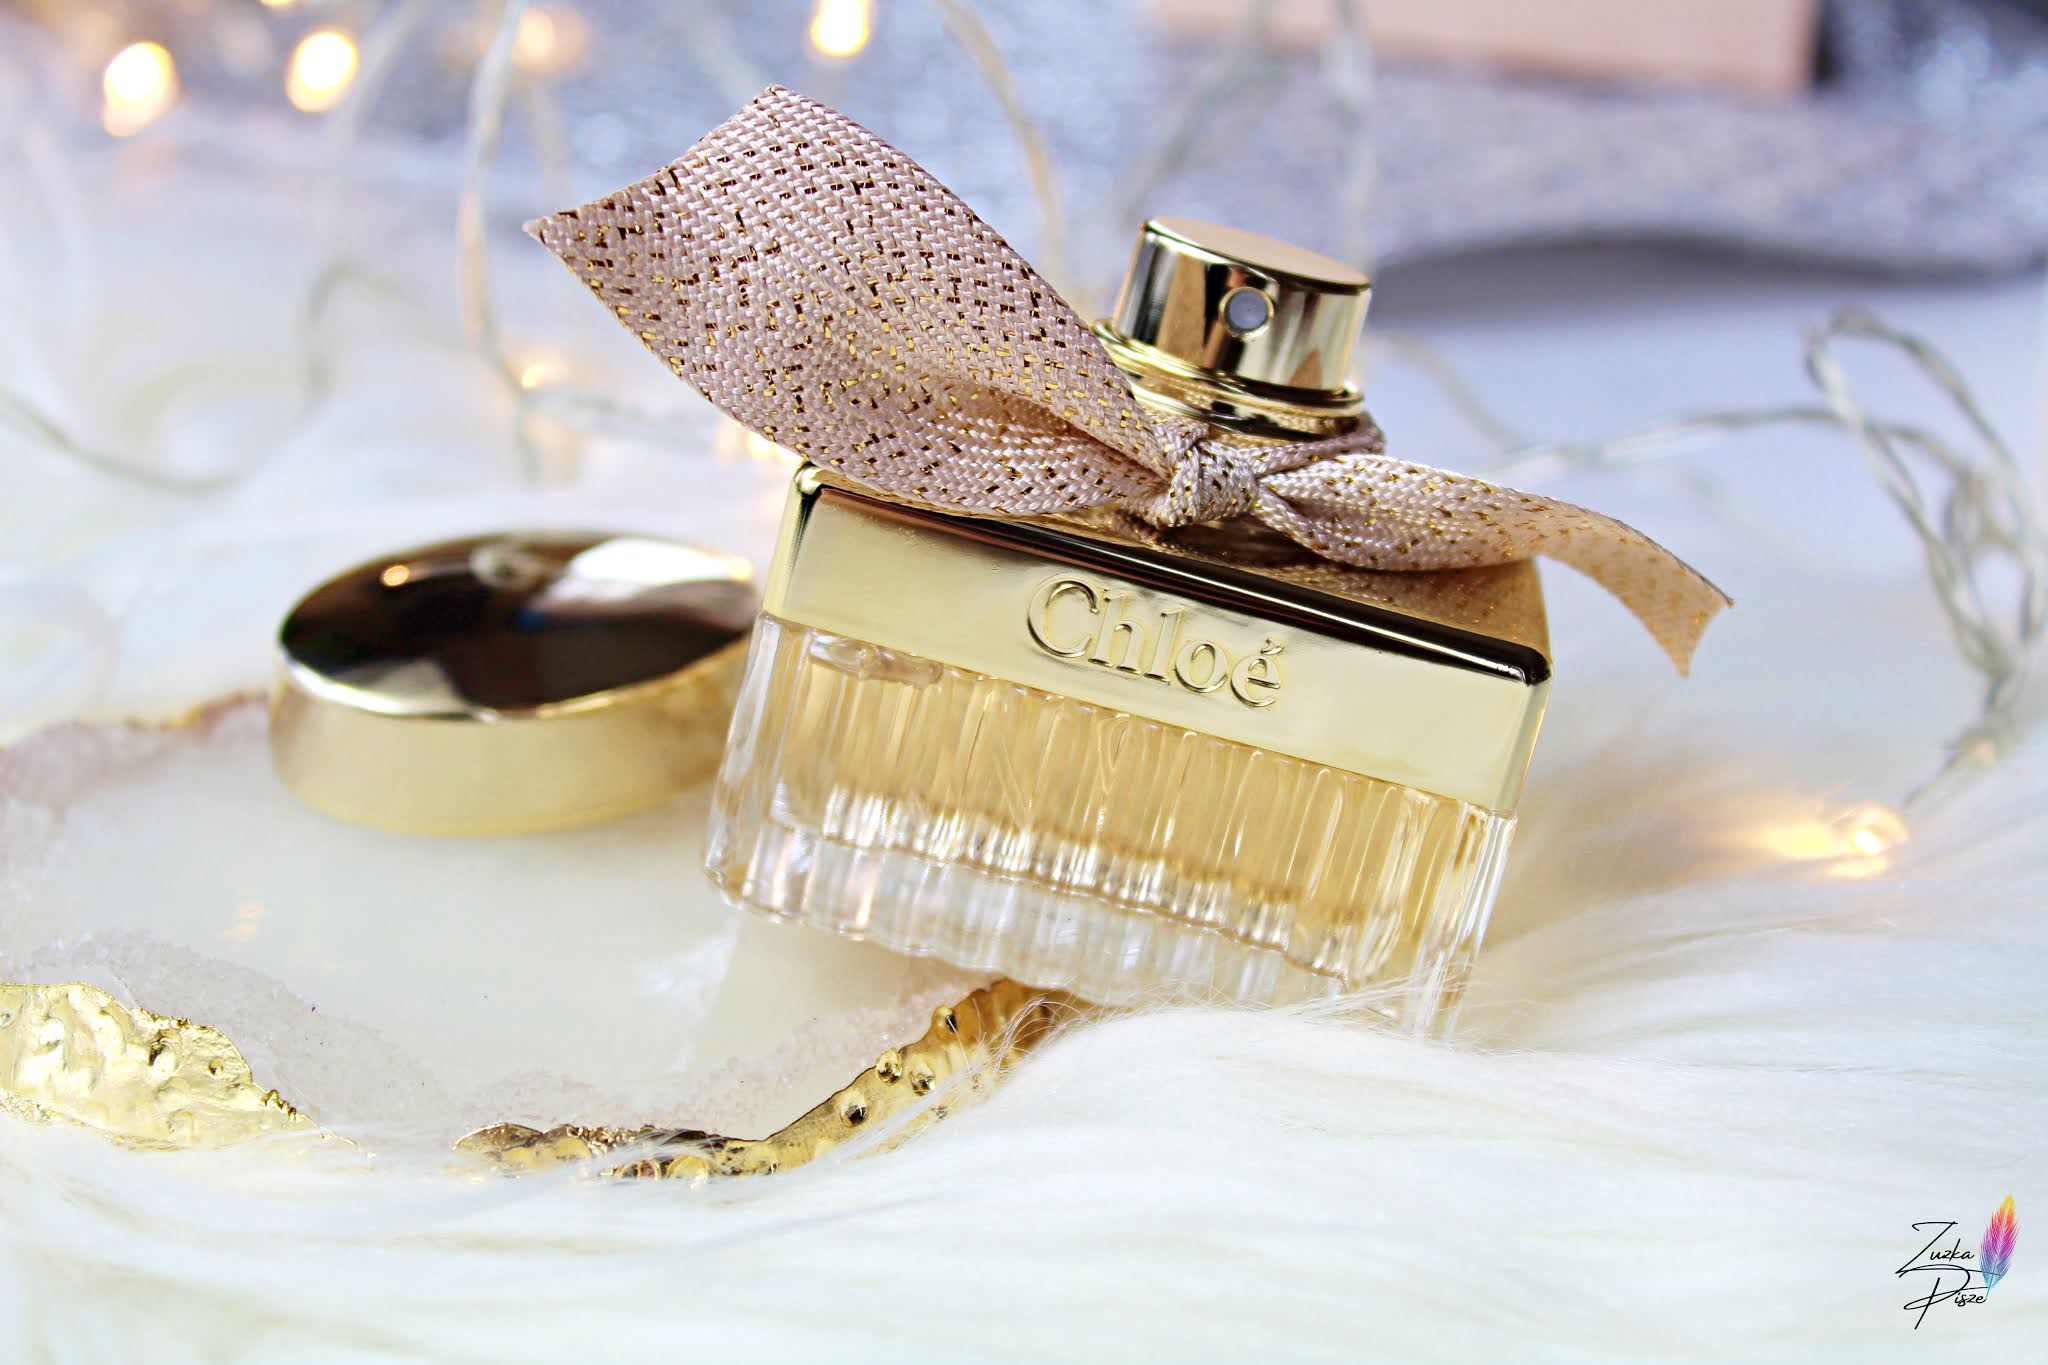 Chloé Absolu de Parfum - woda perfumowana dla kobiet  | Zuzka Pisze - strona typowo kobieca - kosmetyki, porady, książki, dziecko, lifestyle